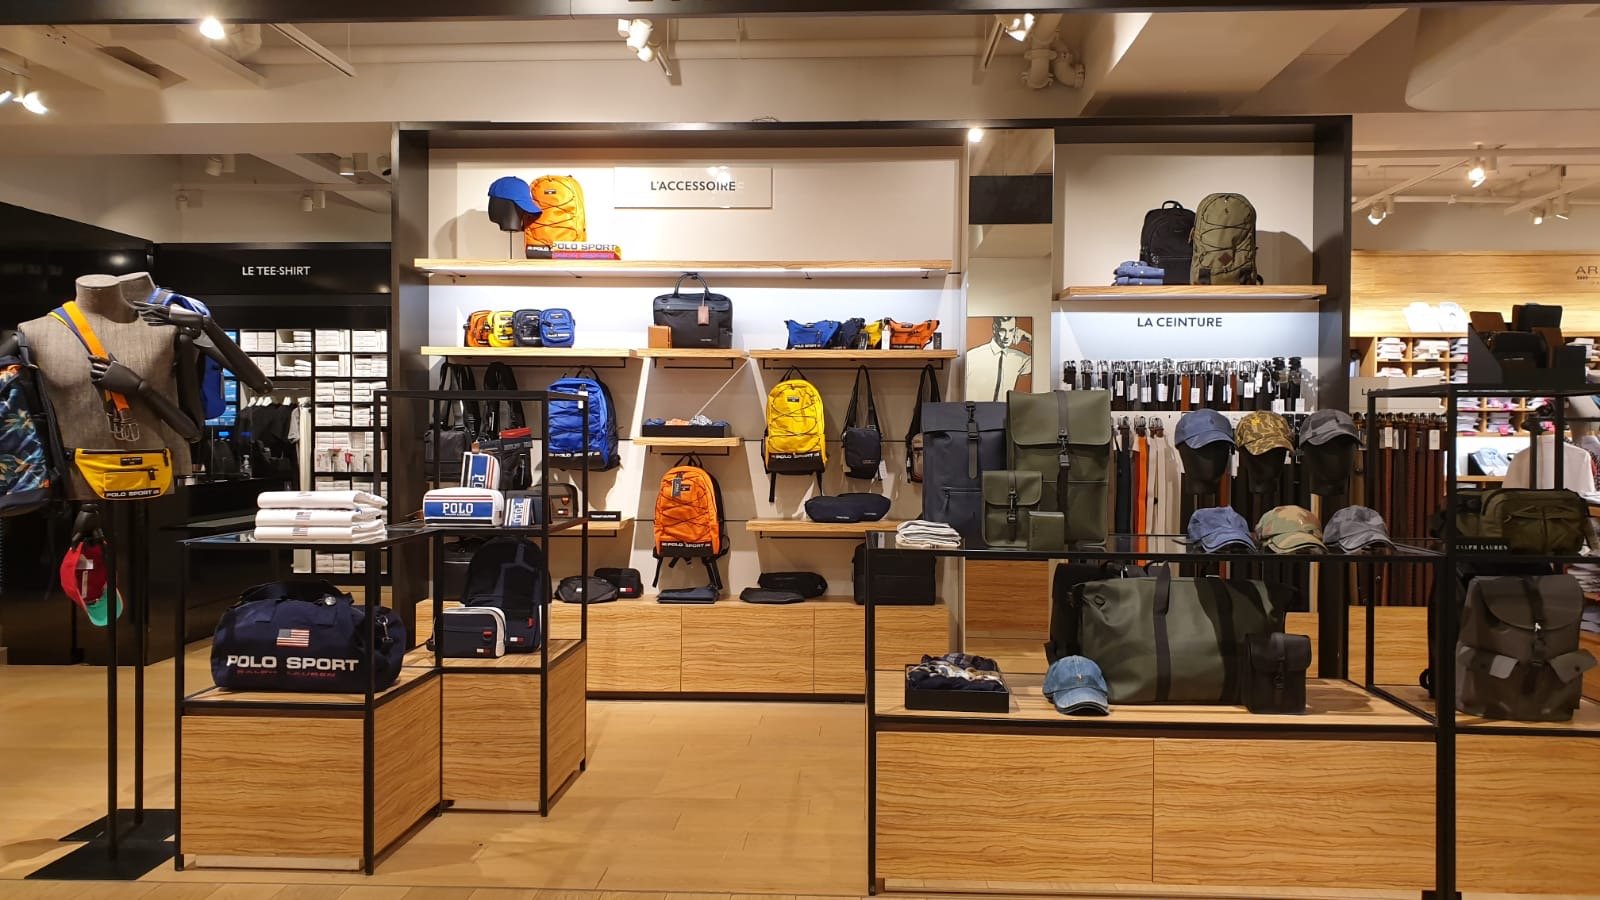 Visual Merchandising & Store Retail Display – Lee Display